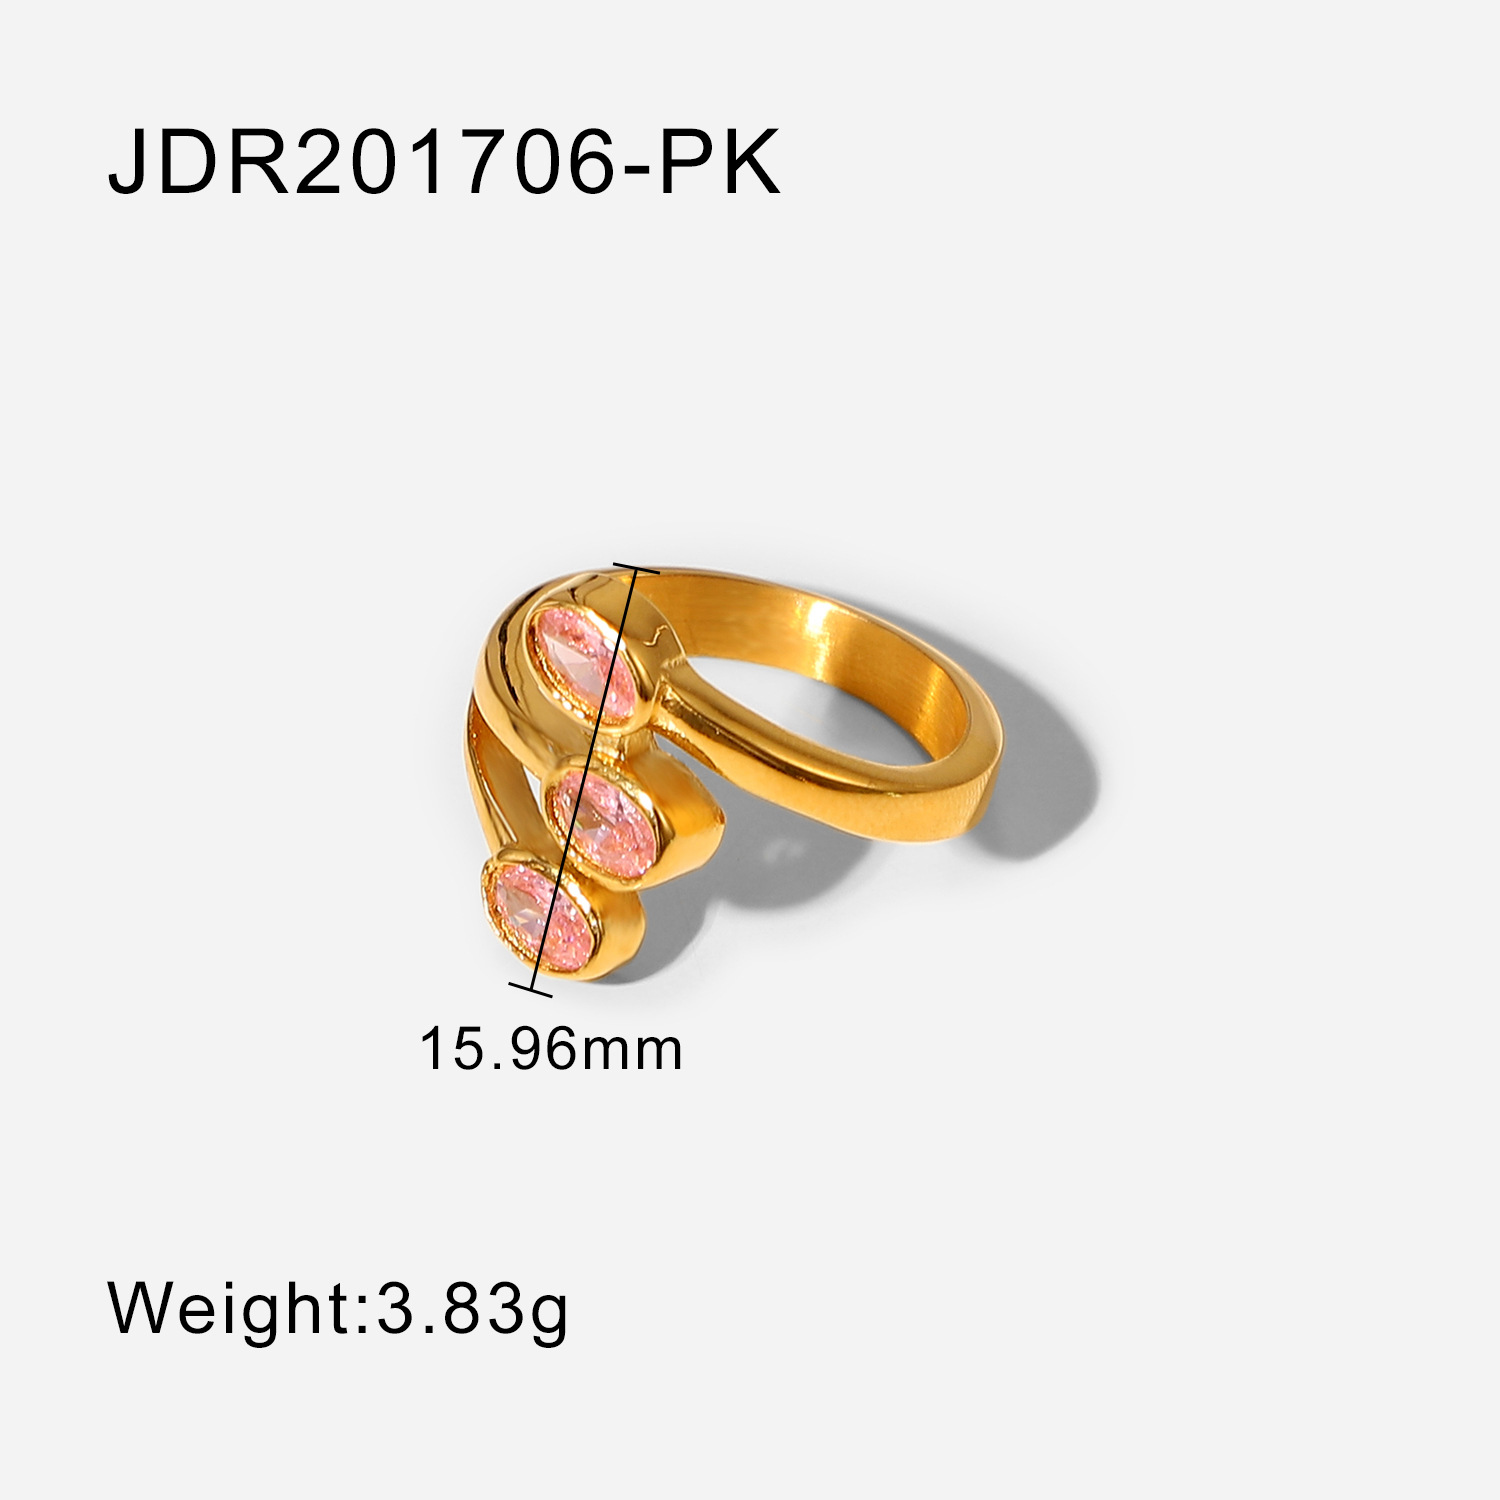 JDR201706-PK 6